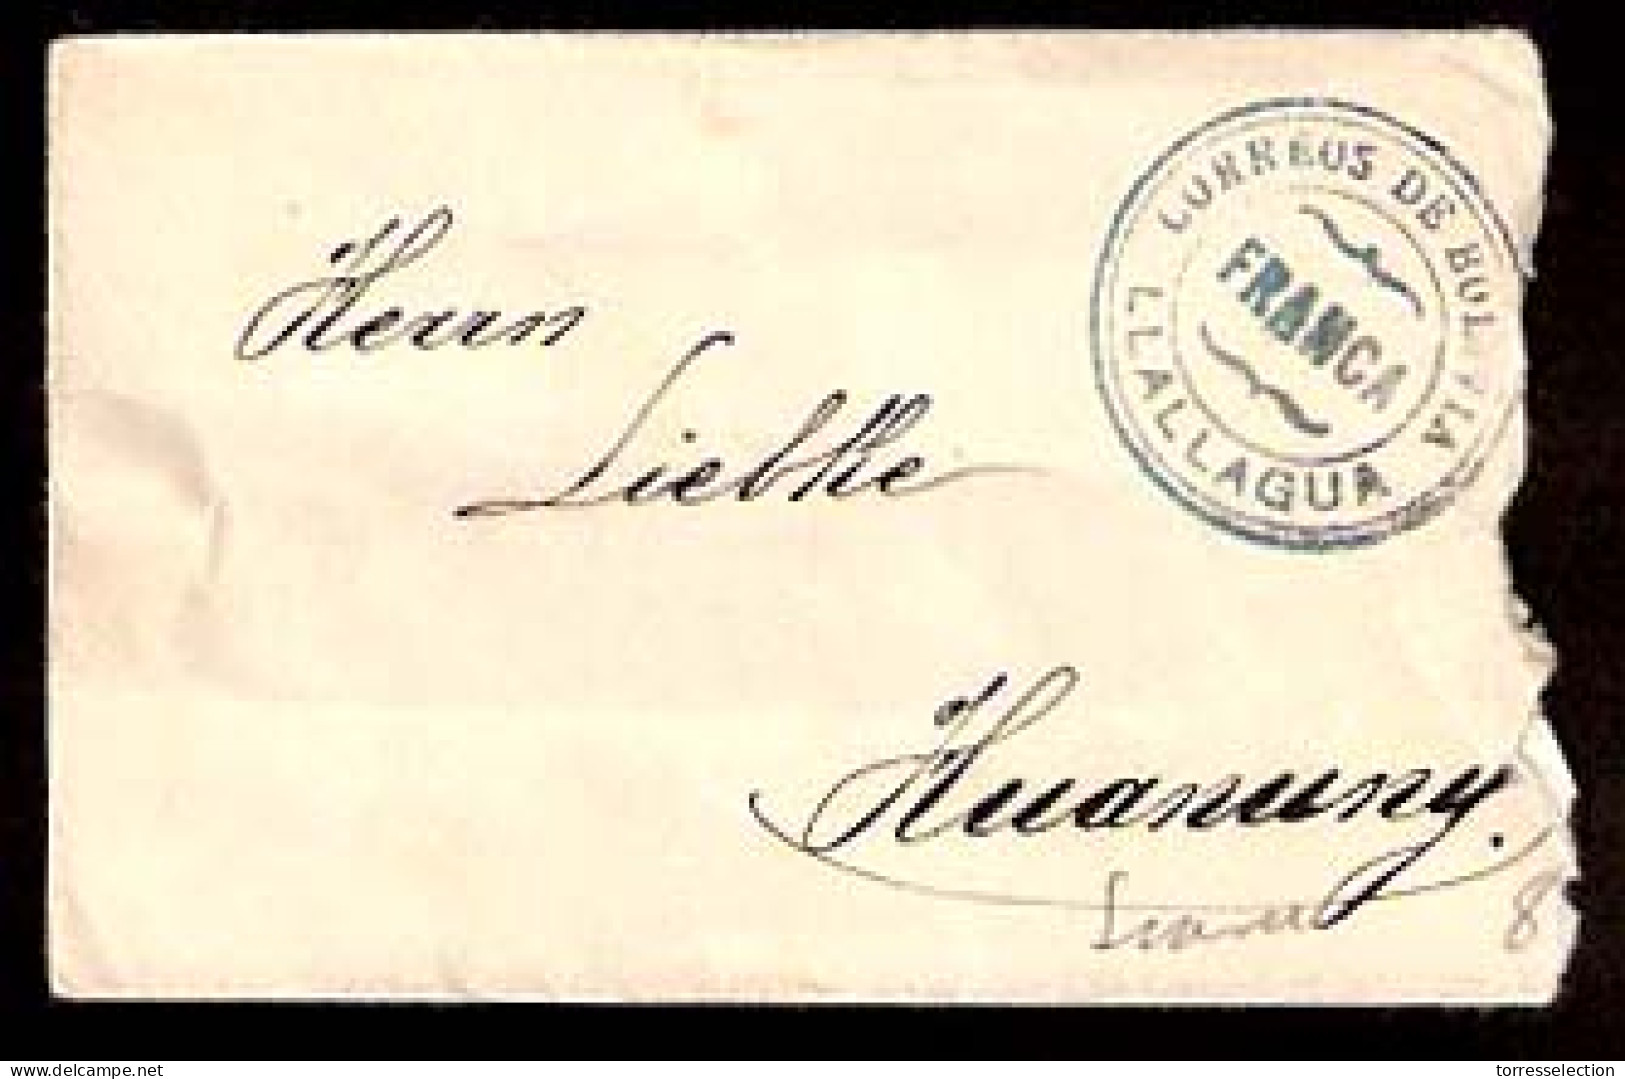 BOLIVIA. C.1920's. Llallagua - Huanuny. Env / Unfkd. "Correos / Franca" Blue Pmk Lack Of Stamps. Interesting. - Bolivien